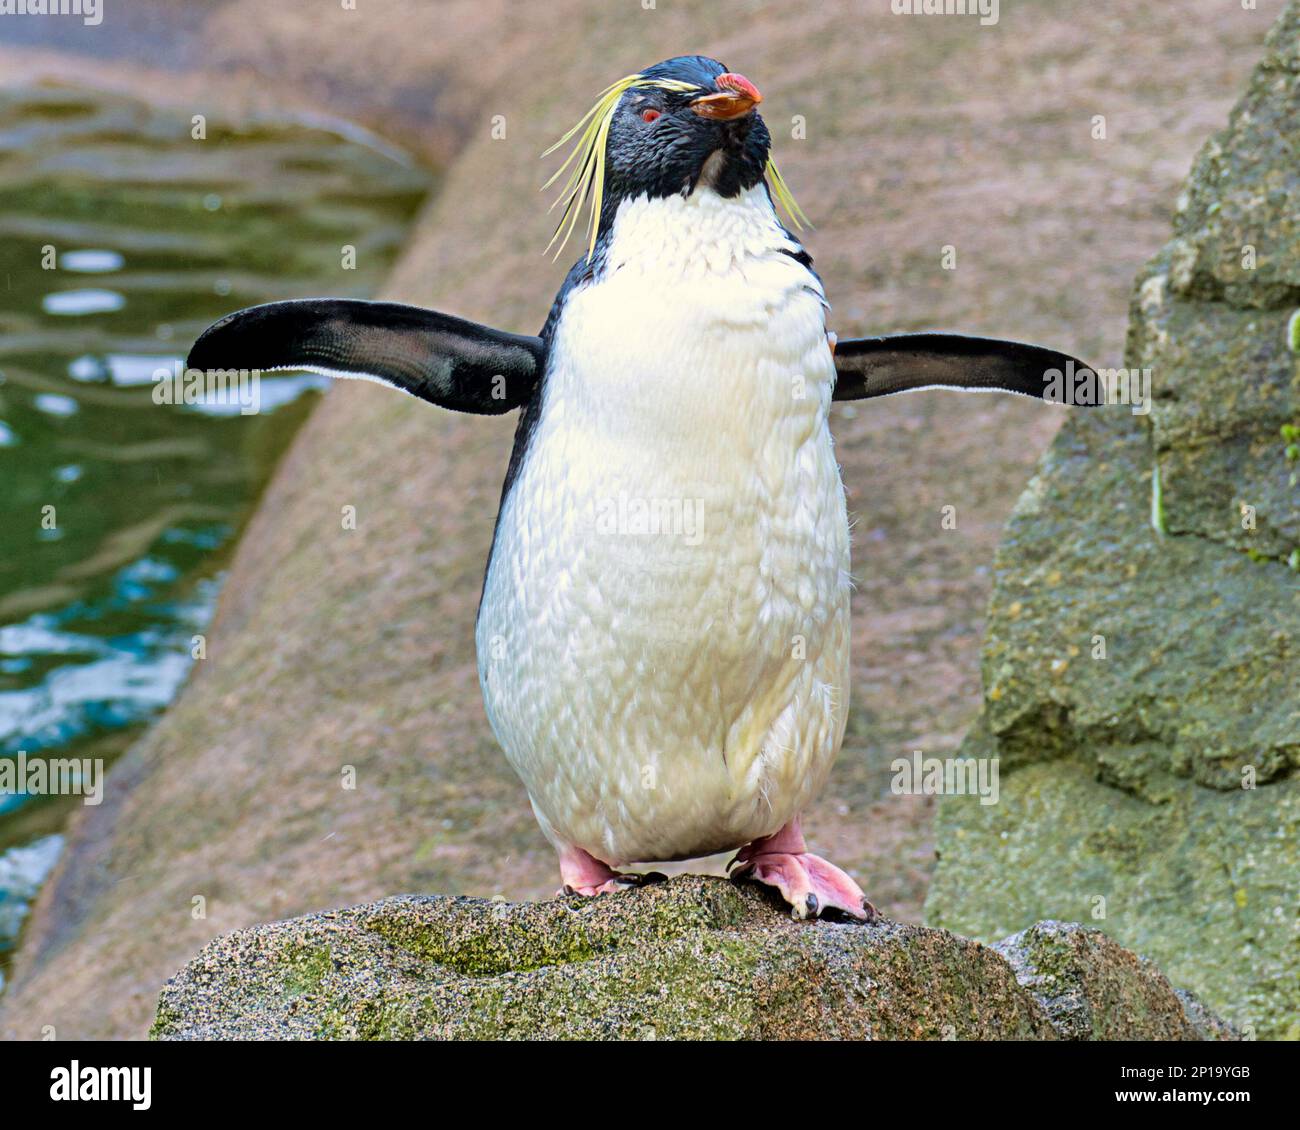 rockhopper Penguins cantare sotto la pioggia. Il secondo giorno di primavera ha visto la pioggia come lo zoo e i suoi animali ne hanno fatto il meglio. Foto Stock